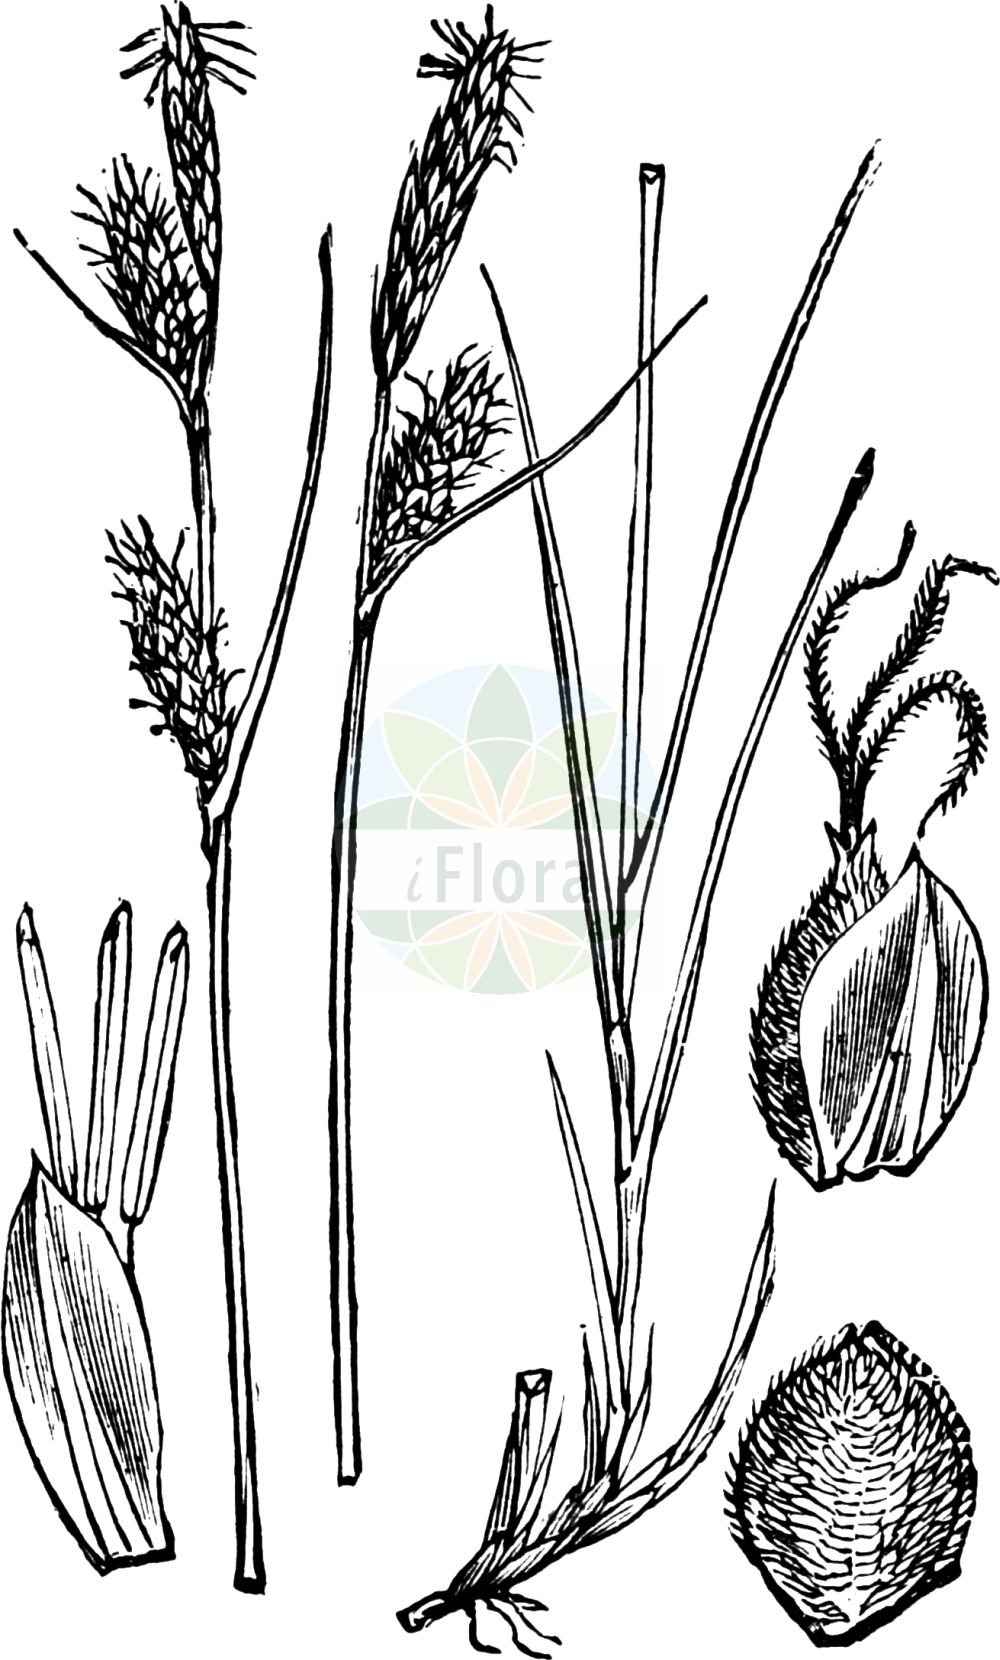 Historische Abbildung von Carex filiformis (Filz-Segge - Downy-fruited Sedge). Das Bild zeigt Blatt, Bluete, Frucht und Same. ---- Historical Drawing of Carex filiformis (Filz-Segge - Downy-fruited Sedge). The image is showing leaf, flower, fruit and seed.(Carex filiformis,Filz-Segge,Downy-fruited Sedge,Carex filiformis,Carex tomentosa,Carex tomentosa var. lucana,Filz-Segge,Downy-fruited Sedge,Carex,Segge,Sedge,Cyperaceae,Sauergräser,Sedge family,Blatt,Bluete,Frucht,Same,leaf,flower,fruit,seed,Fitch et al. (1880))